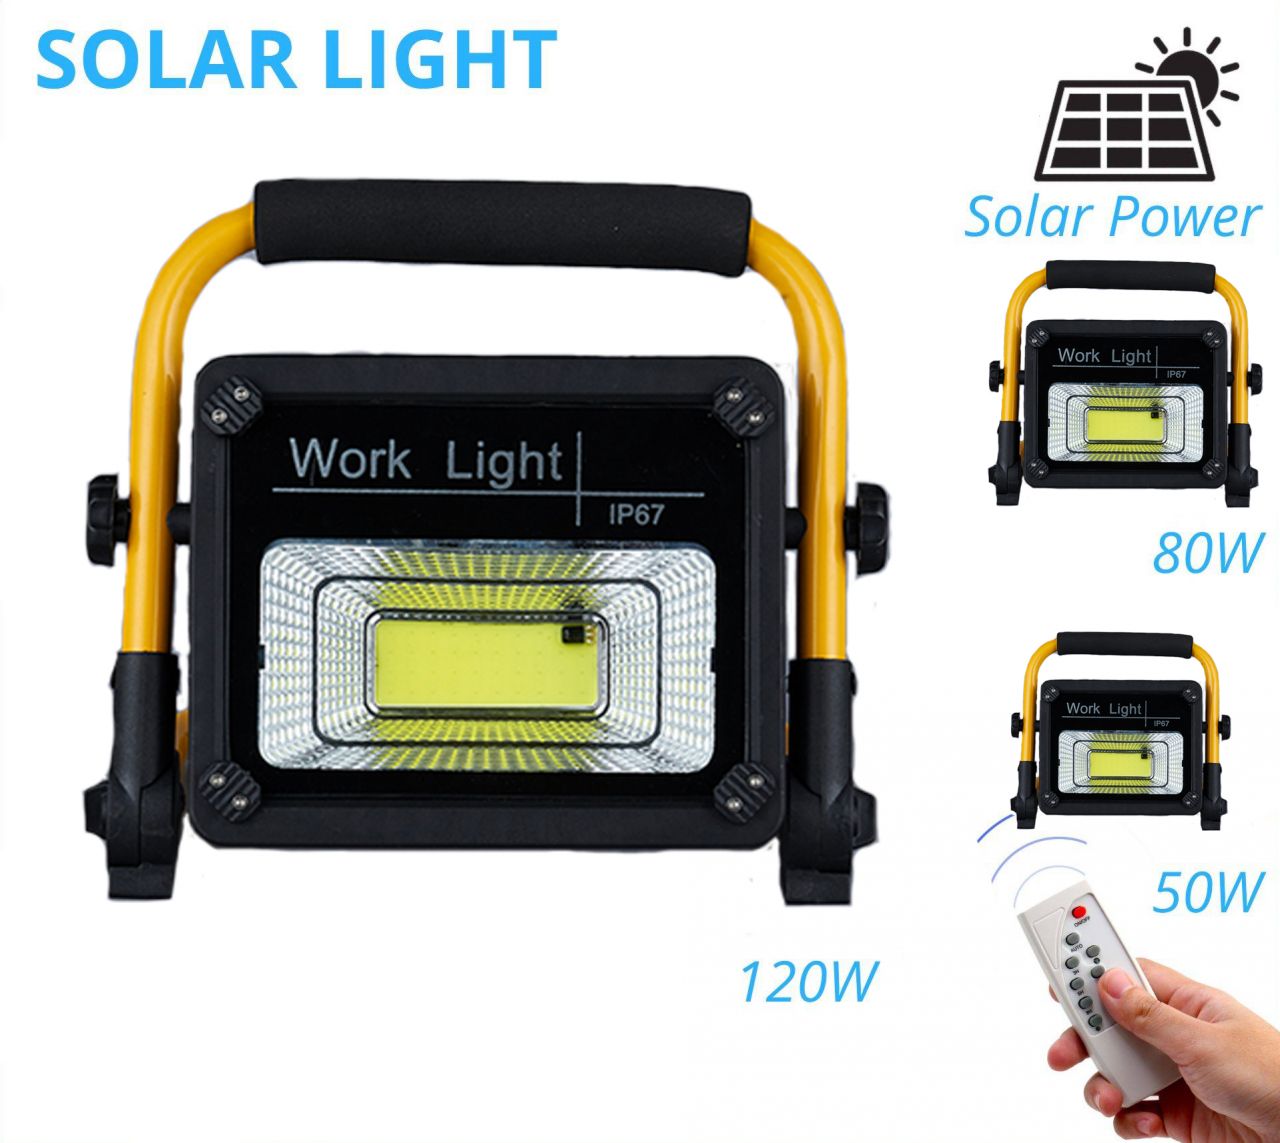 Napelemes Távirányítós Solar Hordozható COB Led reflektor beépített akkumulátoros munkalámpa USB 50W 80W 120W - W745